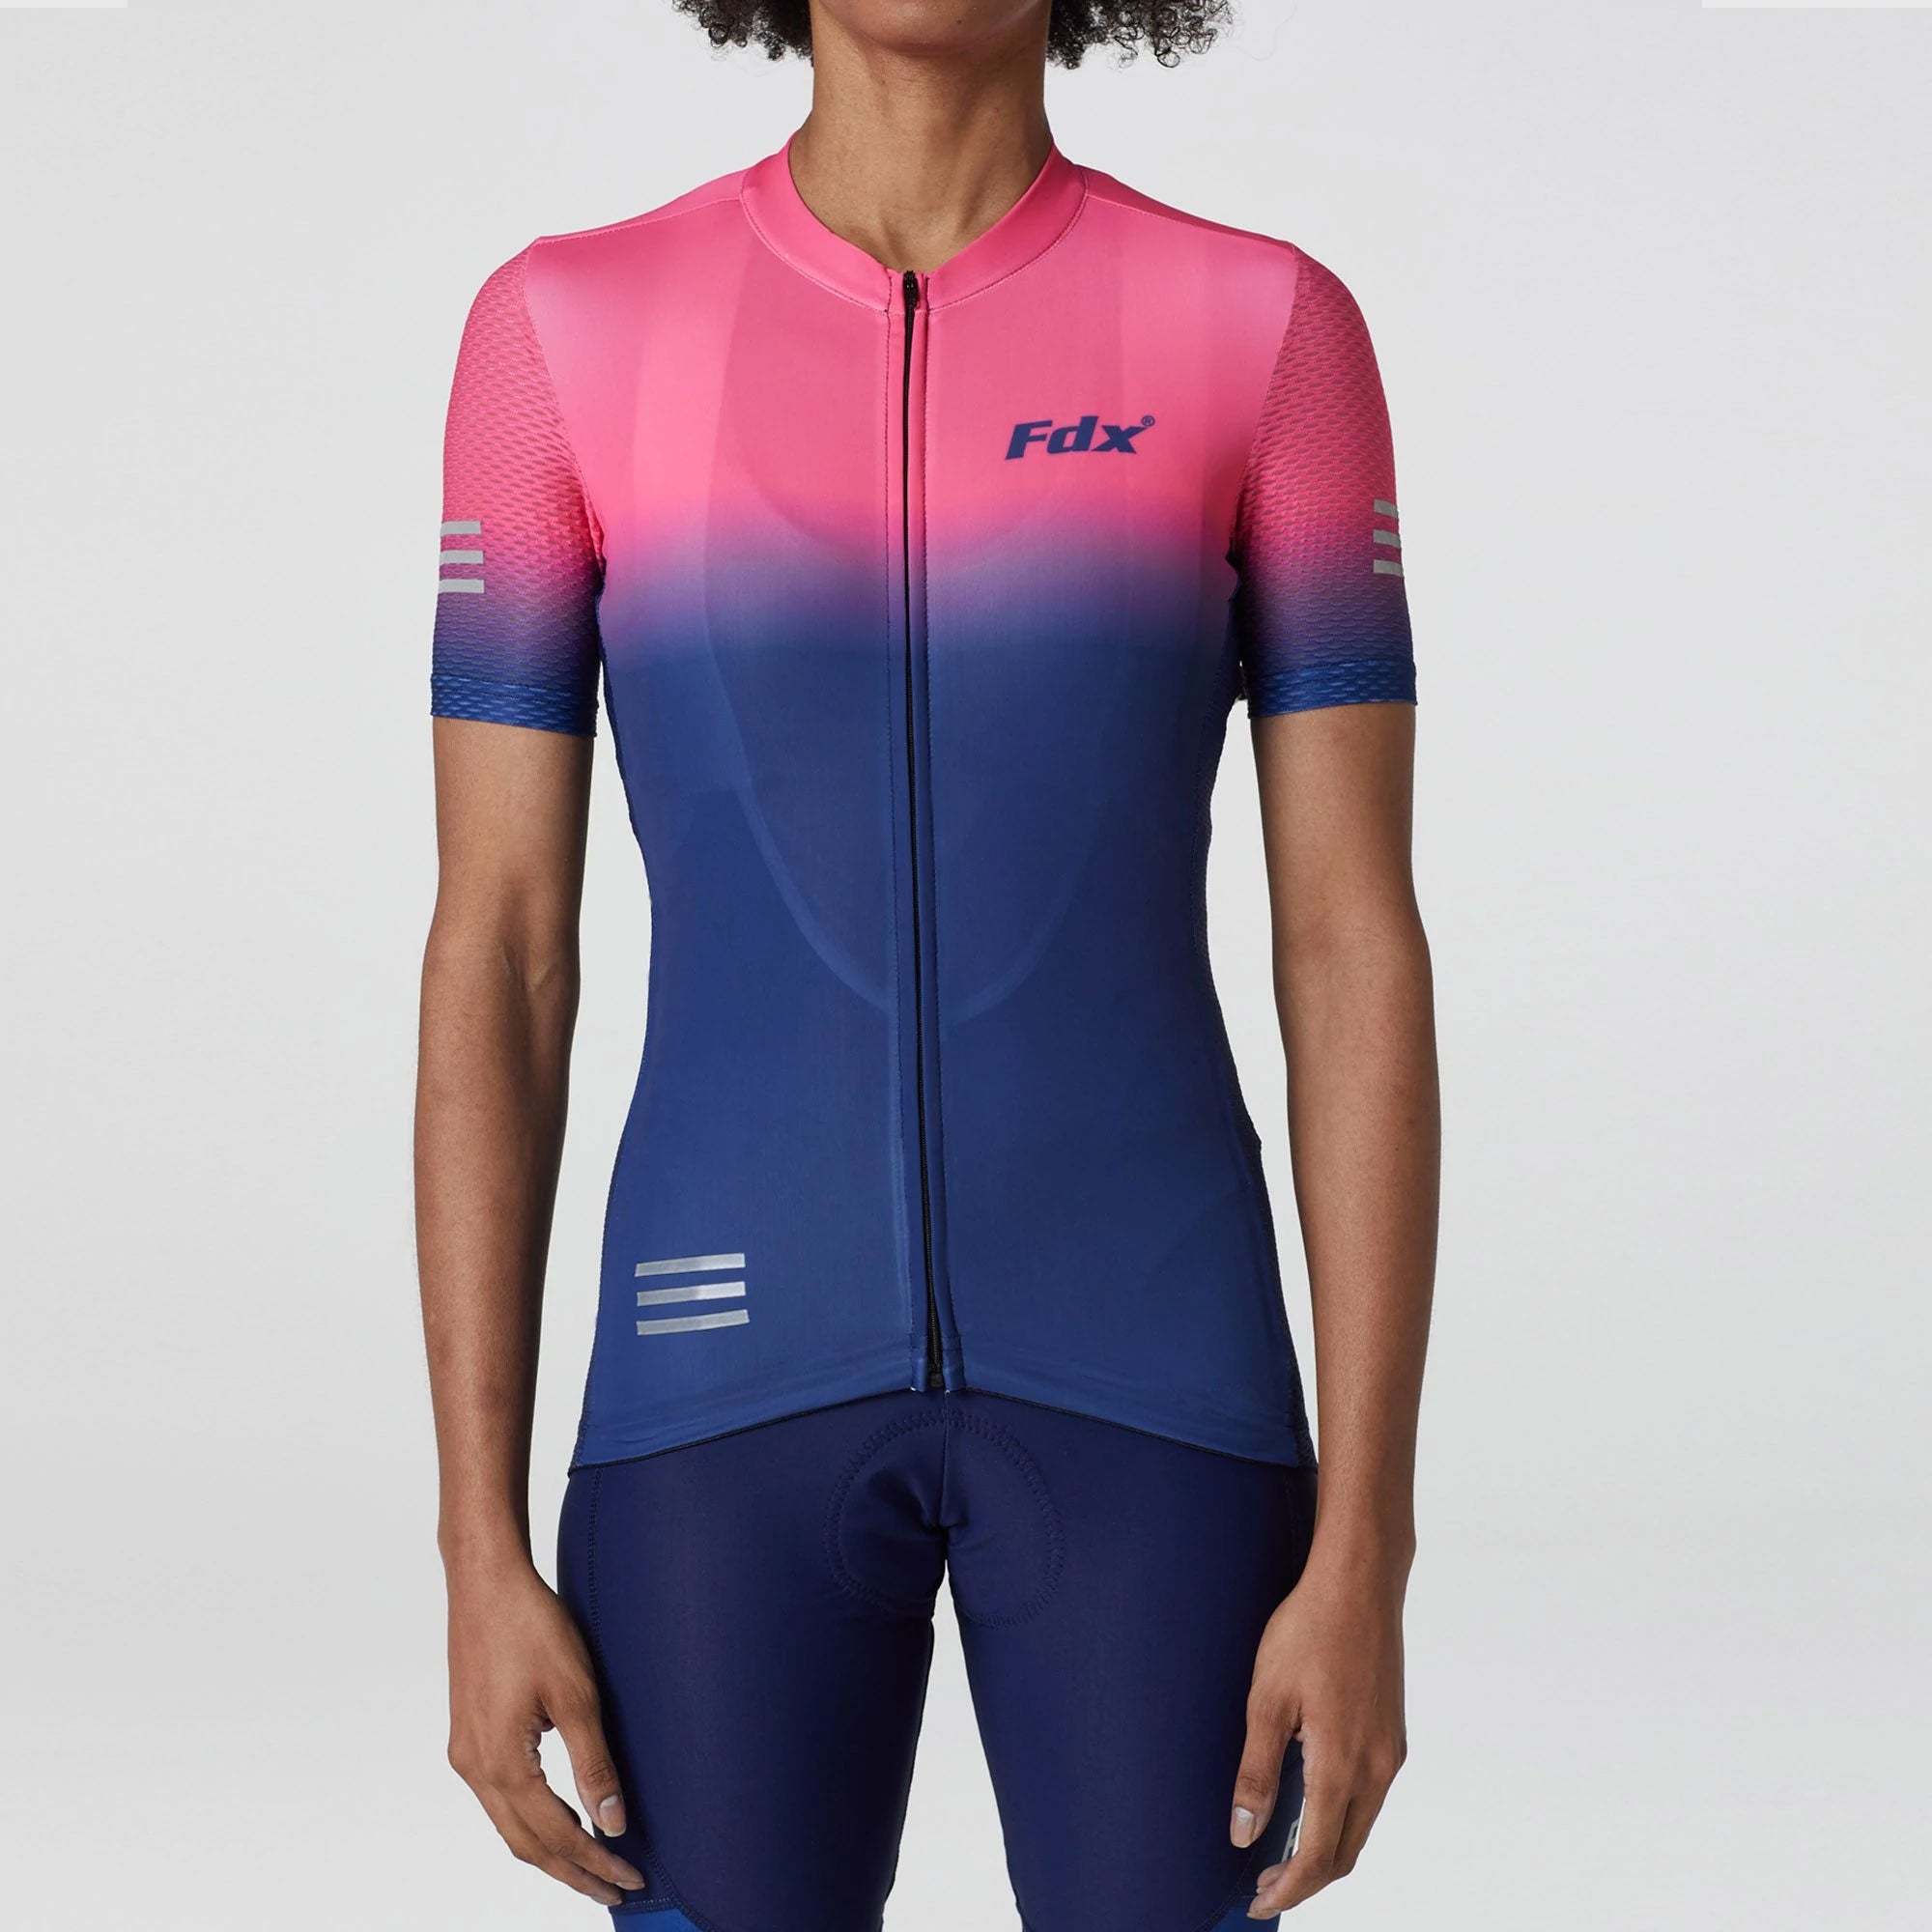 Fdx Womens Pink & Blue Short Sleeve Cycling Jersey for Summer Best Road Bike Wear Top Light Weight, Full Zipper, Pockets & Hi-viz Reflectors - Duo